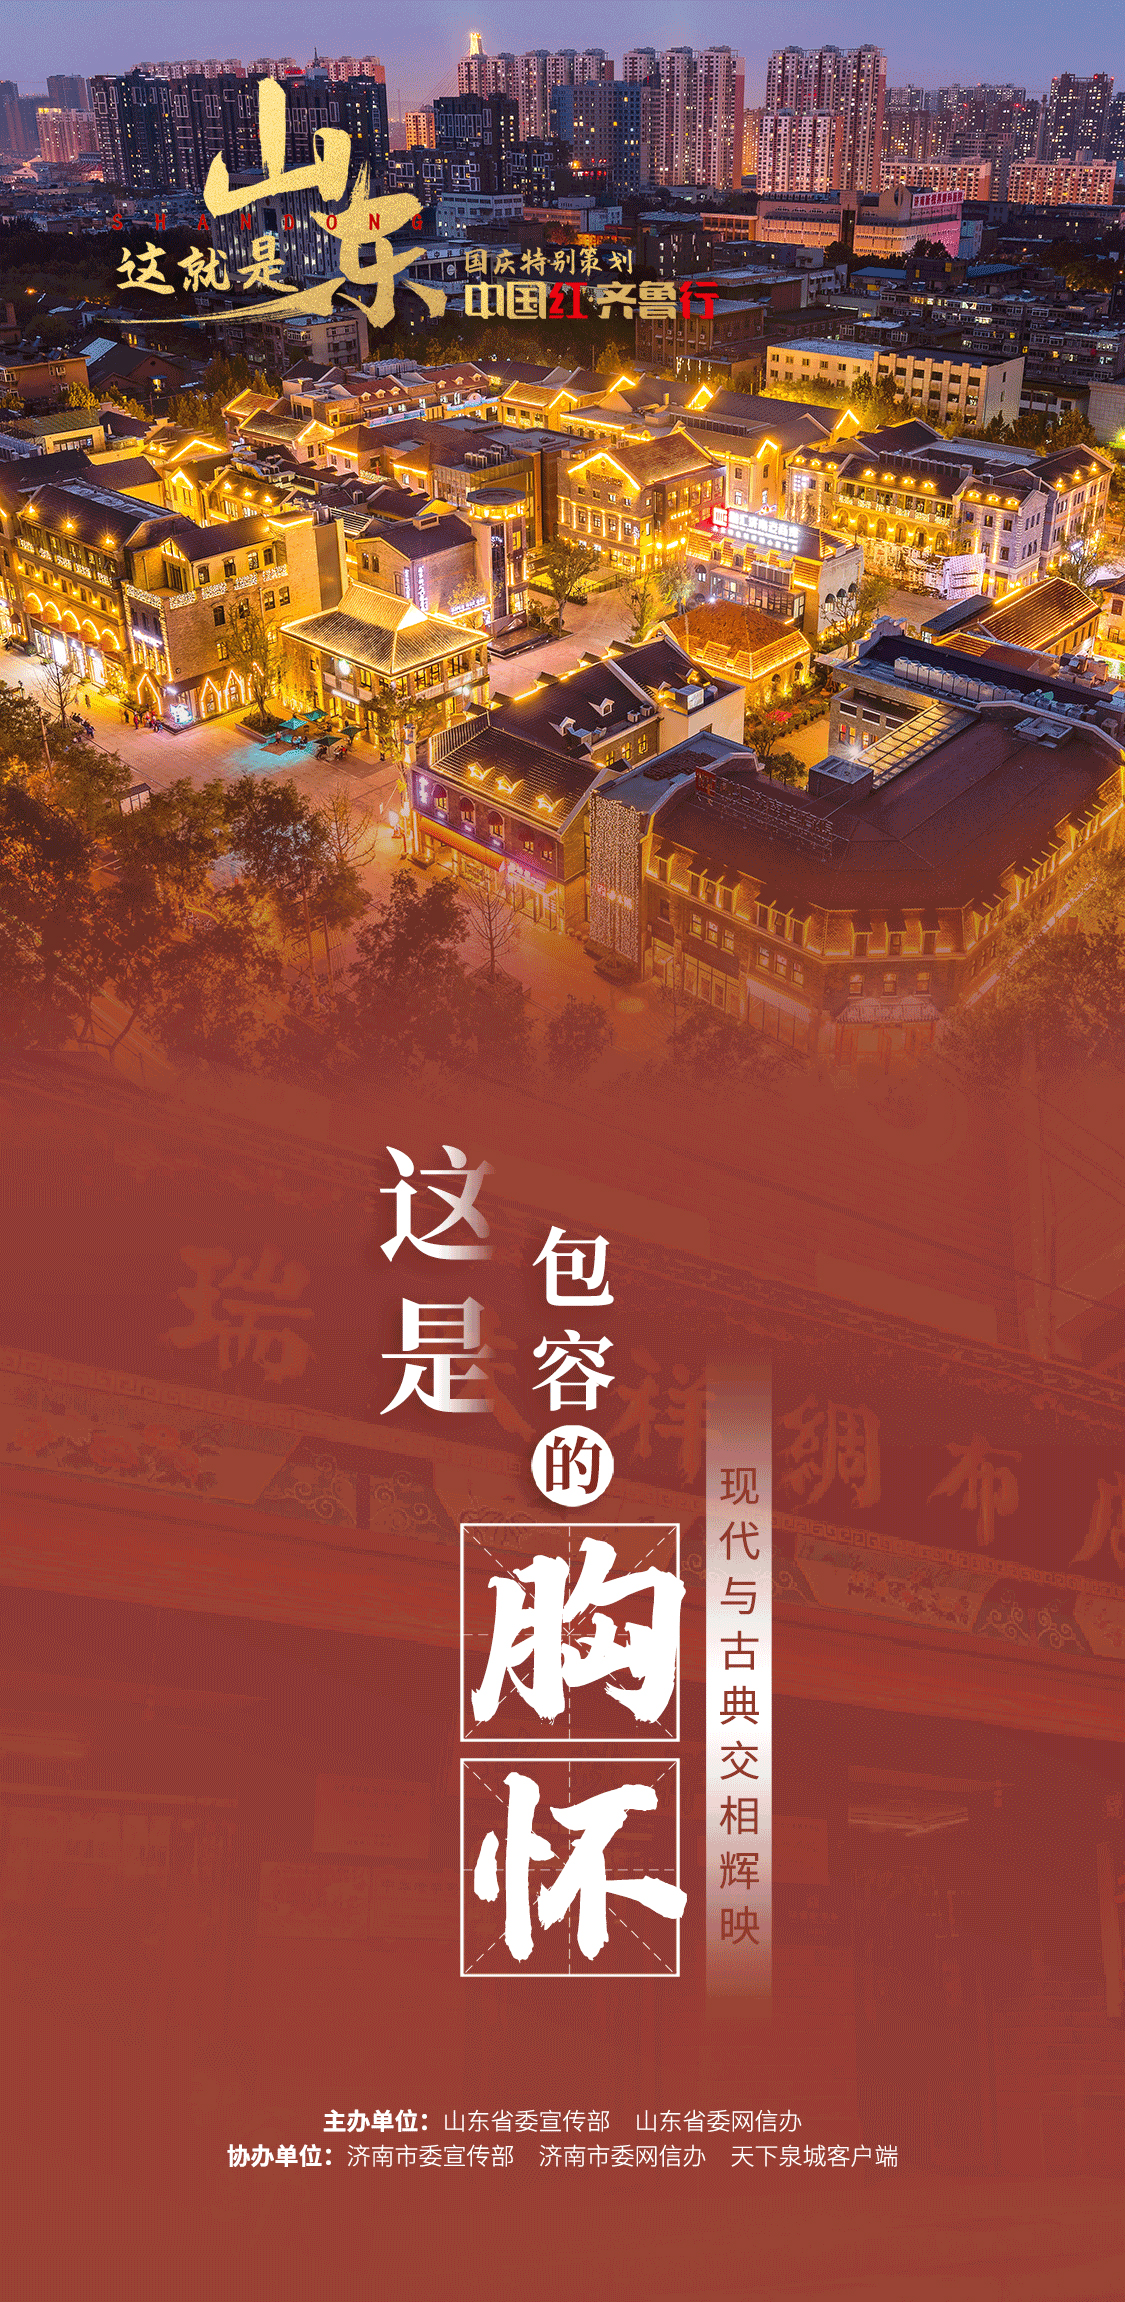 【中国红·齐鲁行】这是黄河的宣言、这是包容的胸怀、这是城市的底气……这就是山东